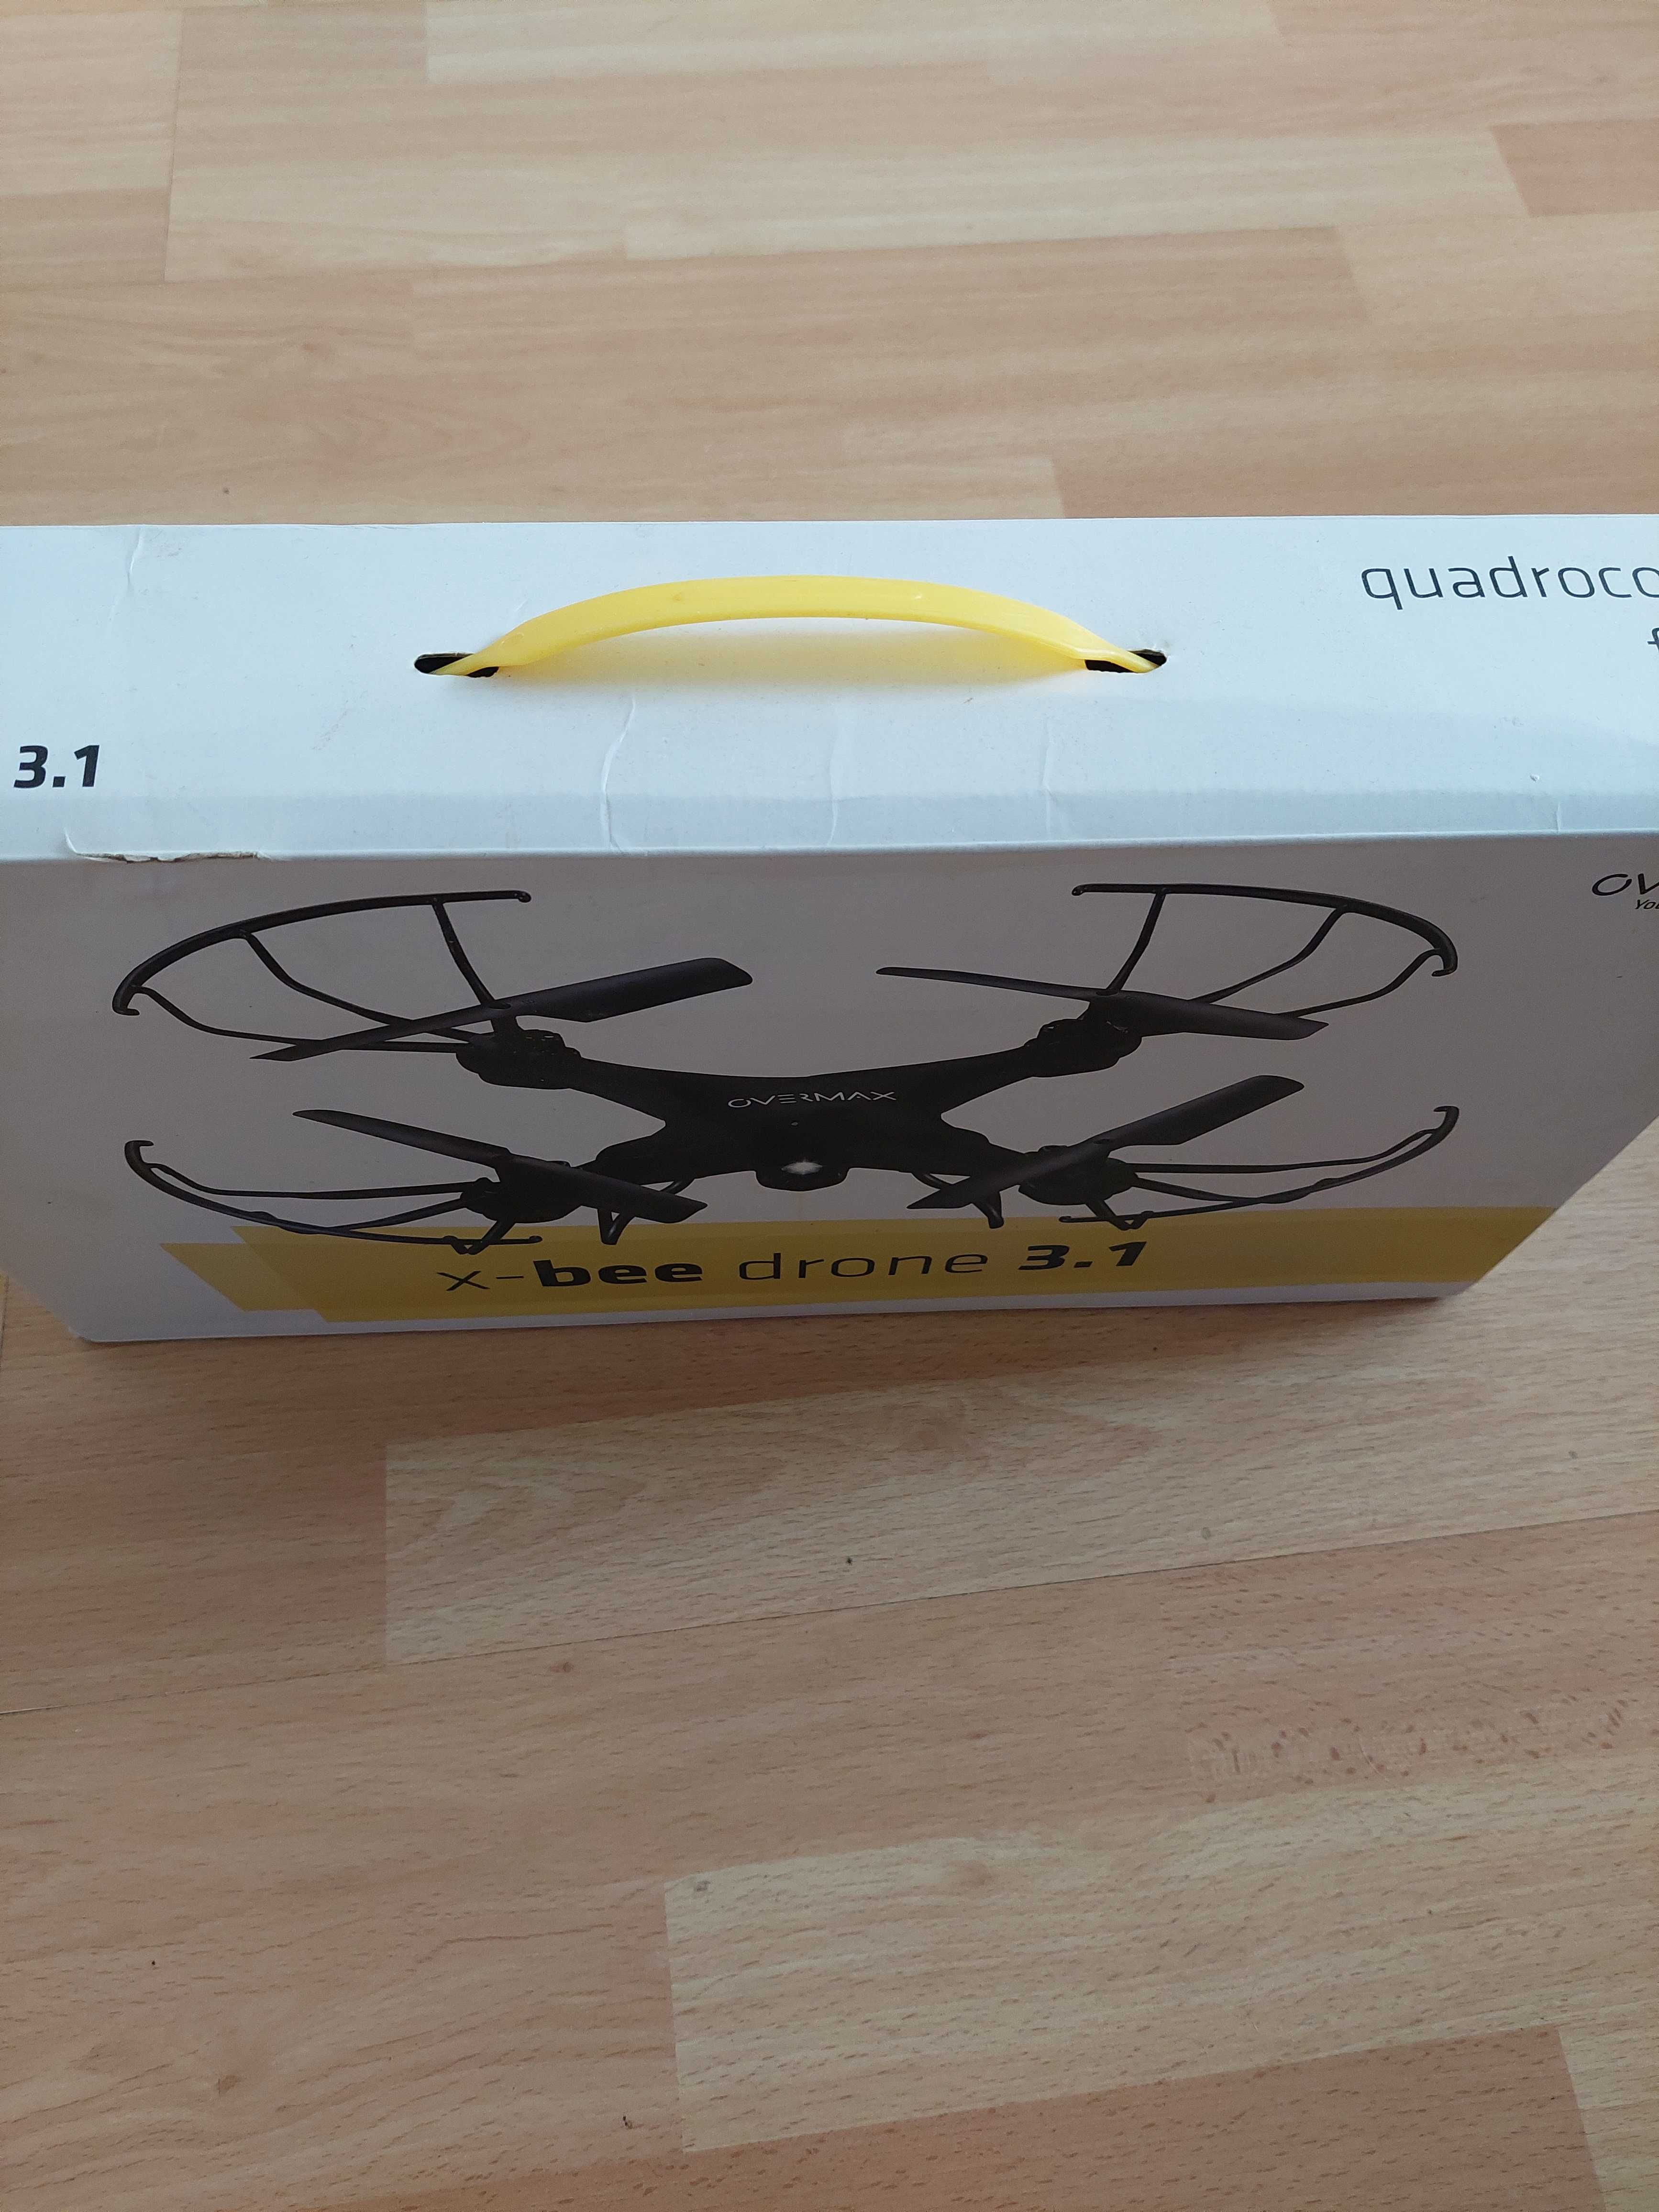 Dron OVERMAX x-bee drone 3.1 na części